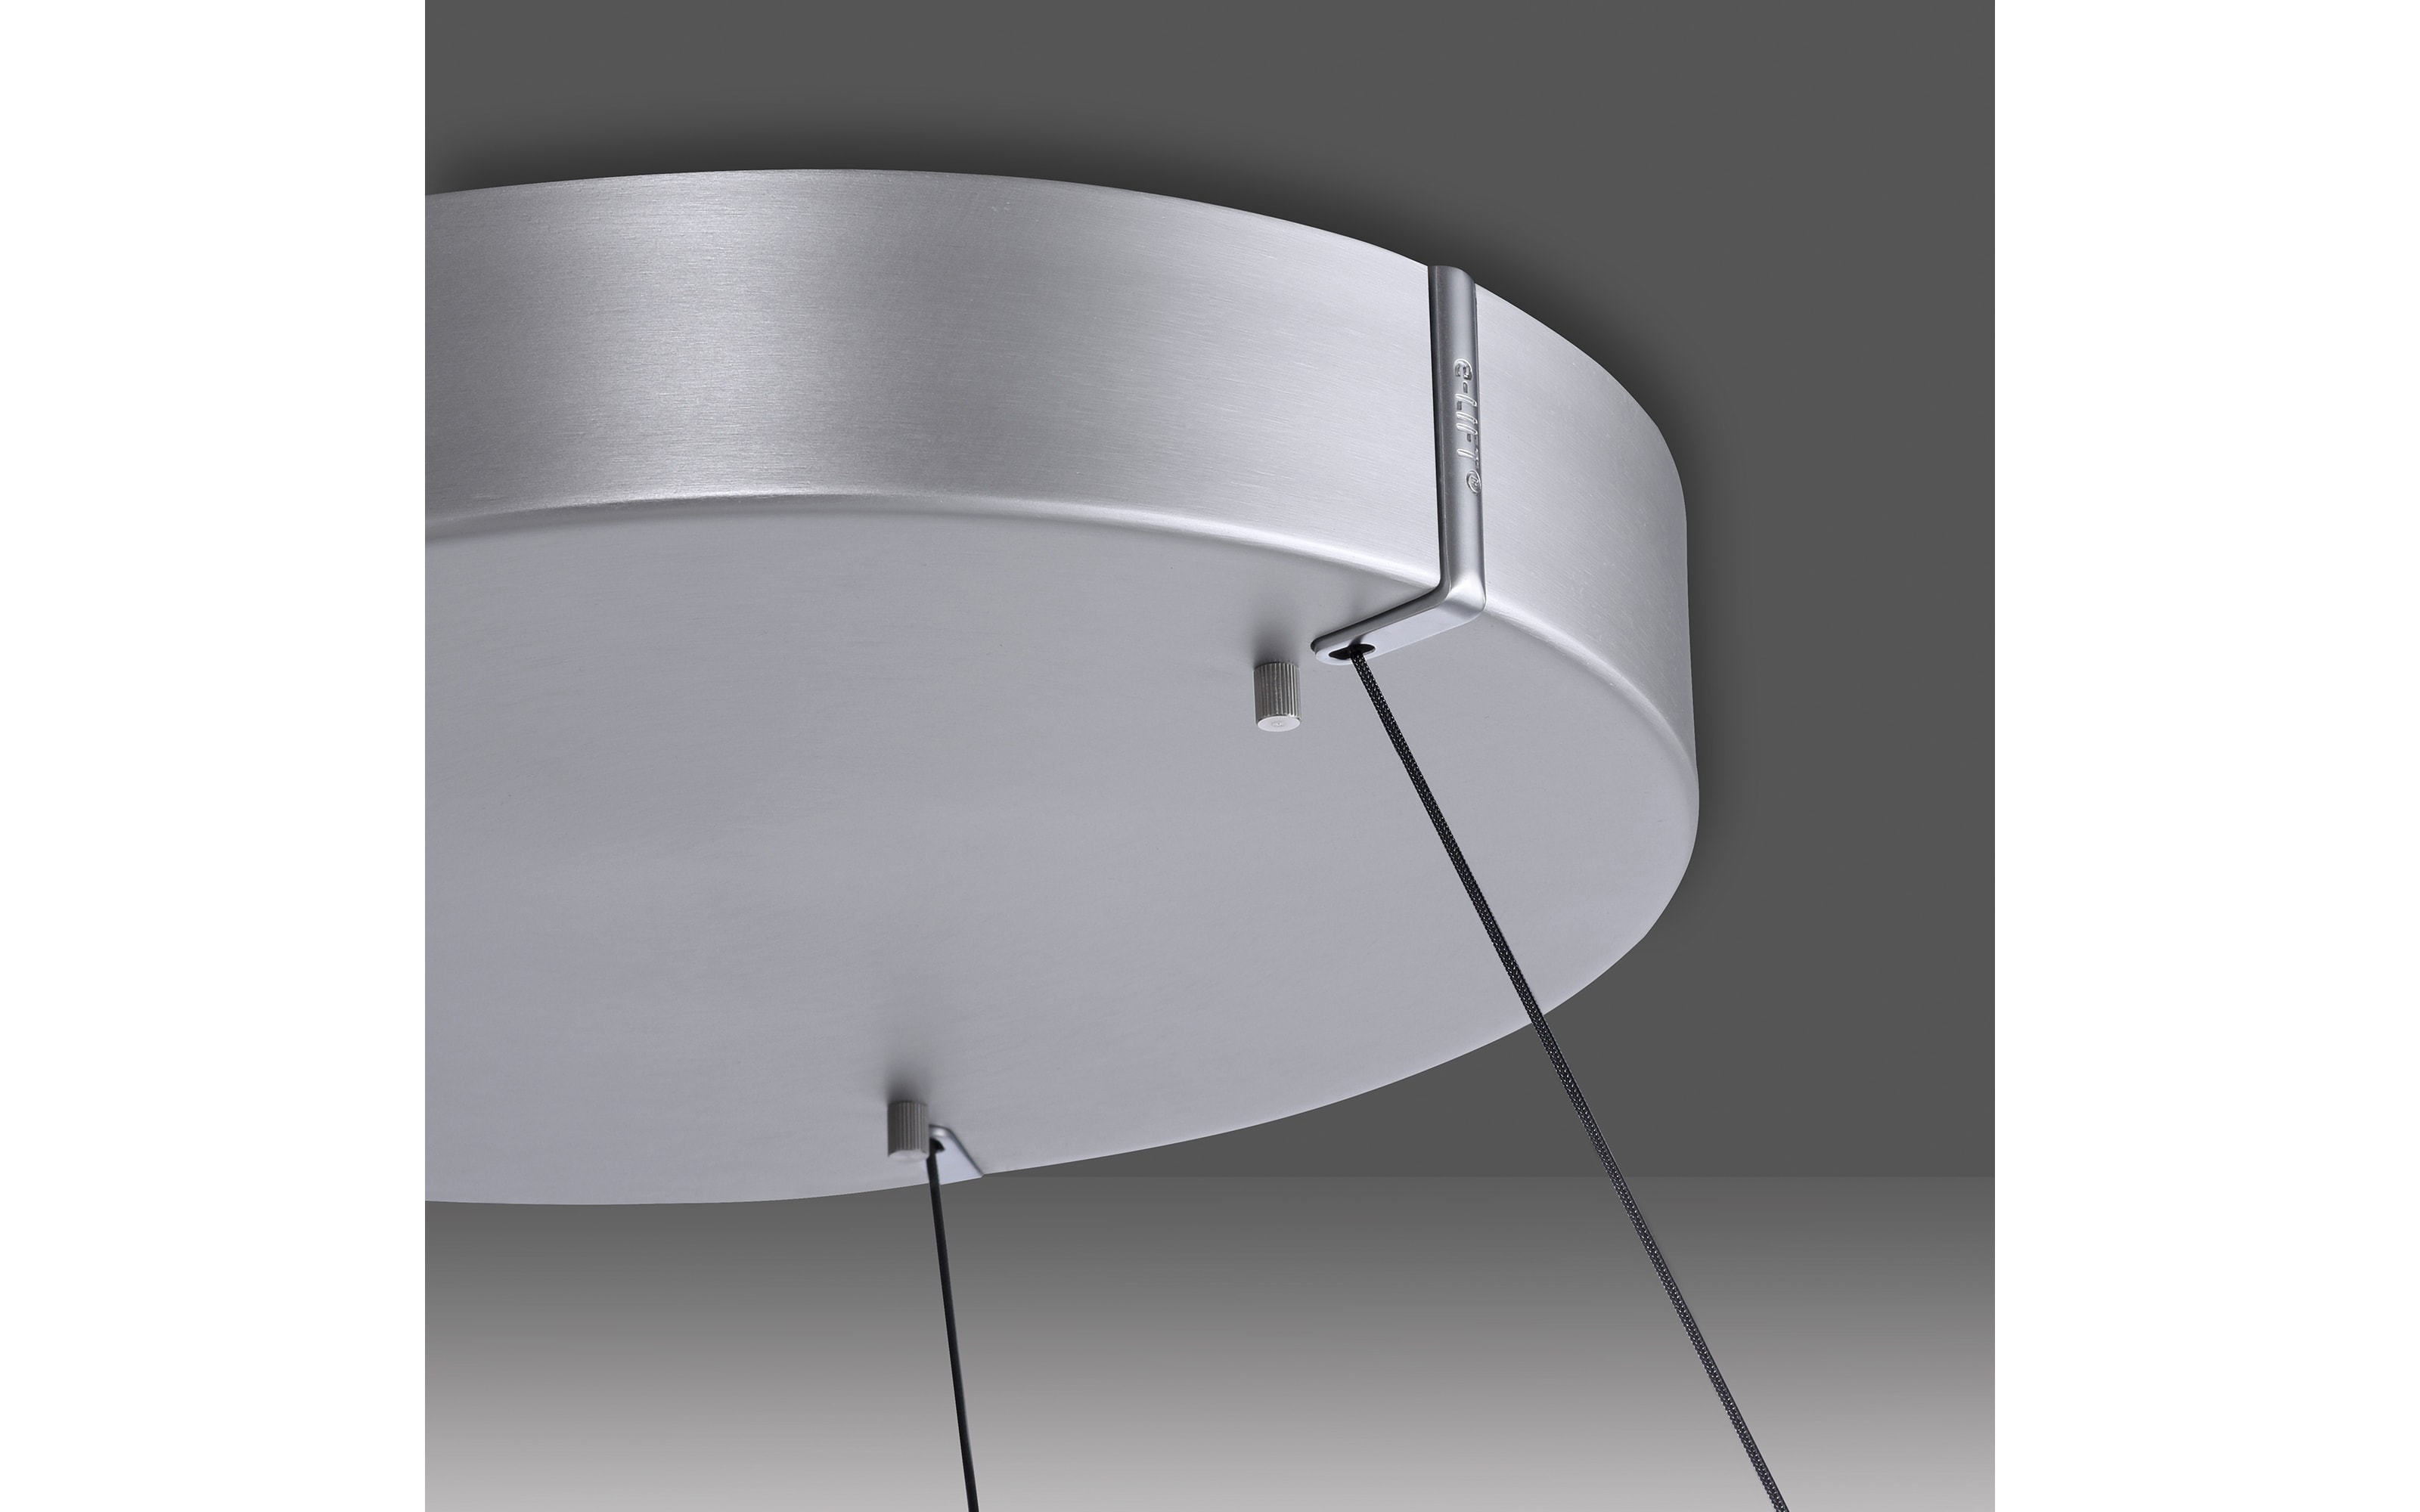 LED-Pendelleuchte Pure E-Clipse, aluminiumfarbig, 240 cm